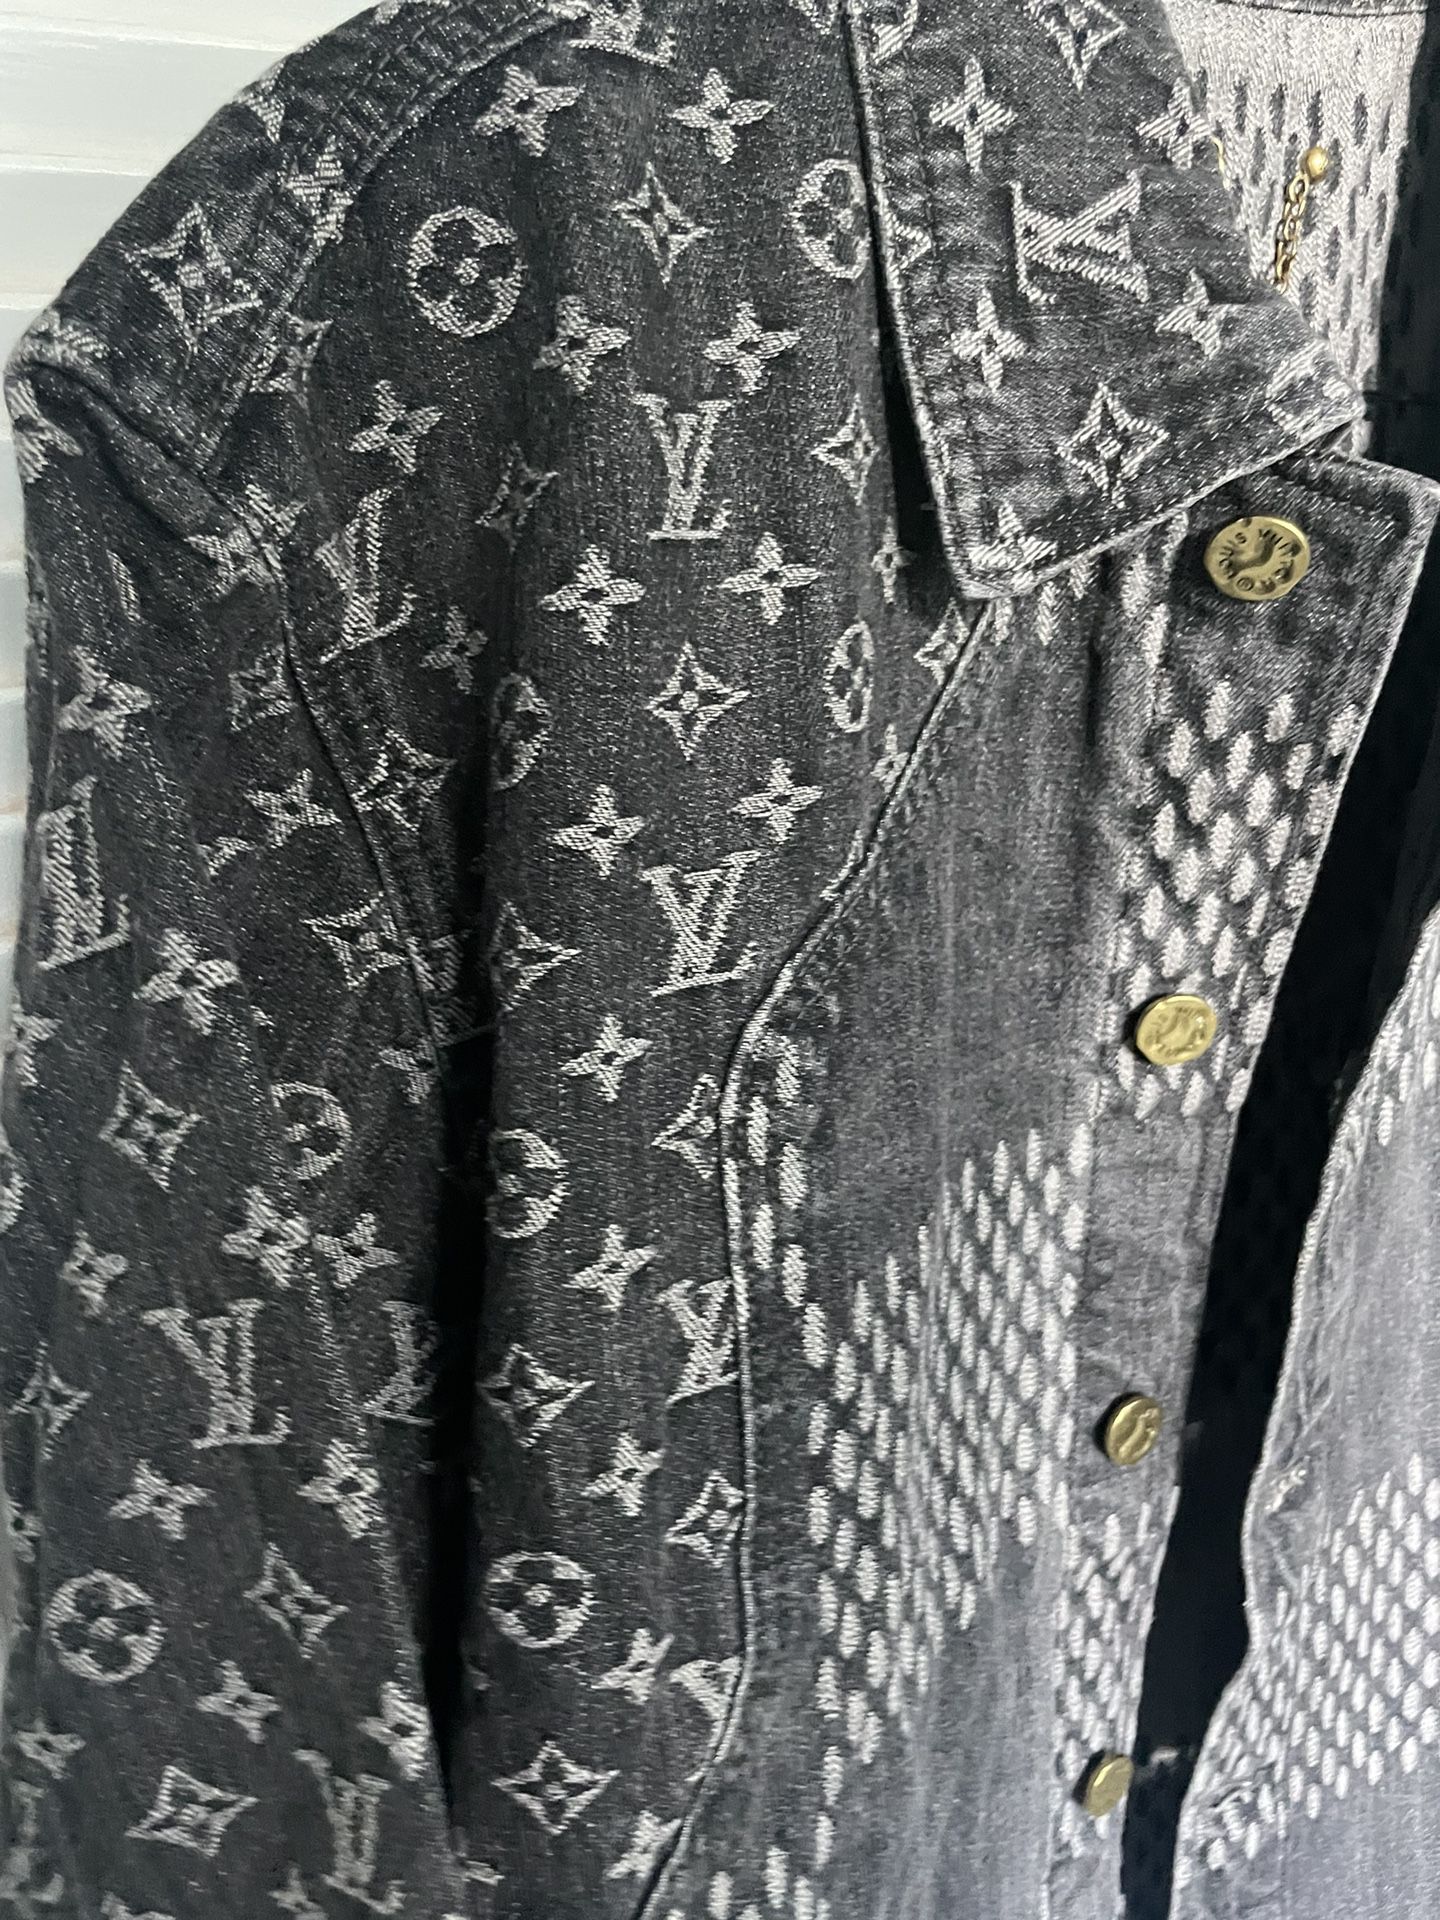 Vest Louis Vuitton x Nigo Grey size 52 FR in Denim - Jeans - 32314436